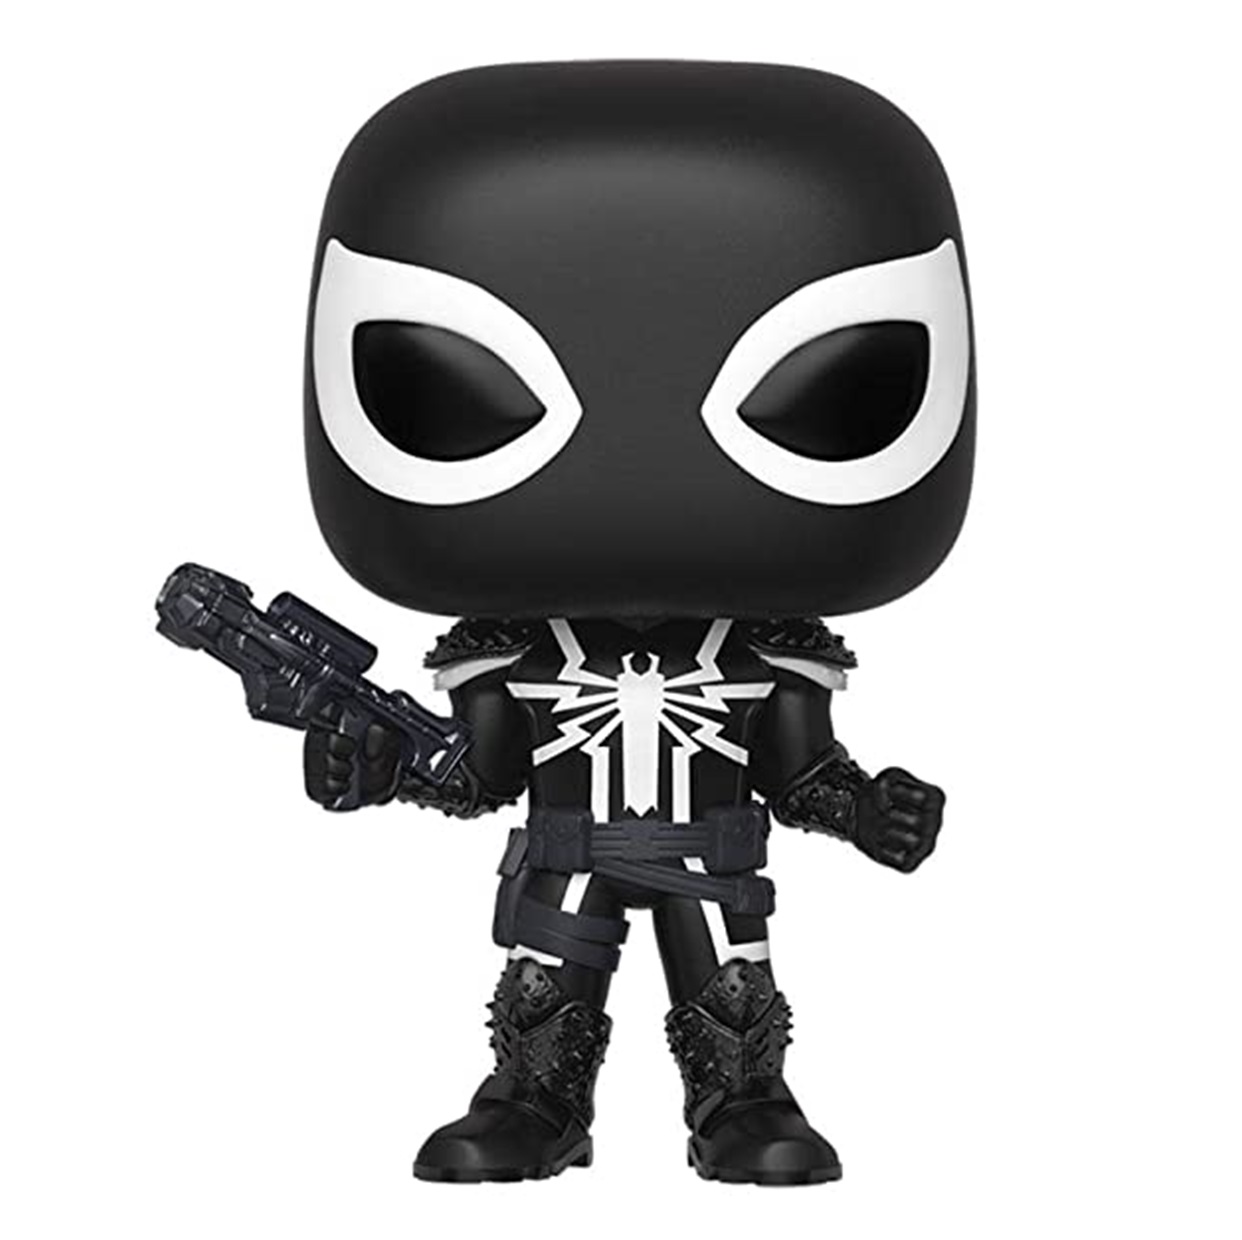 Agente Venom #507 Funko Pop! Exclusivo Pop In A Box